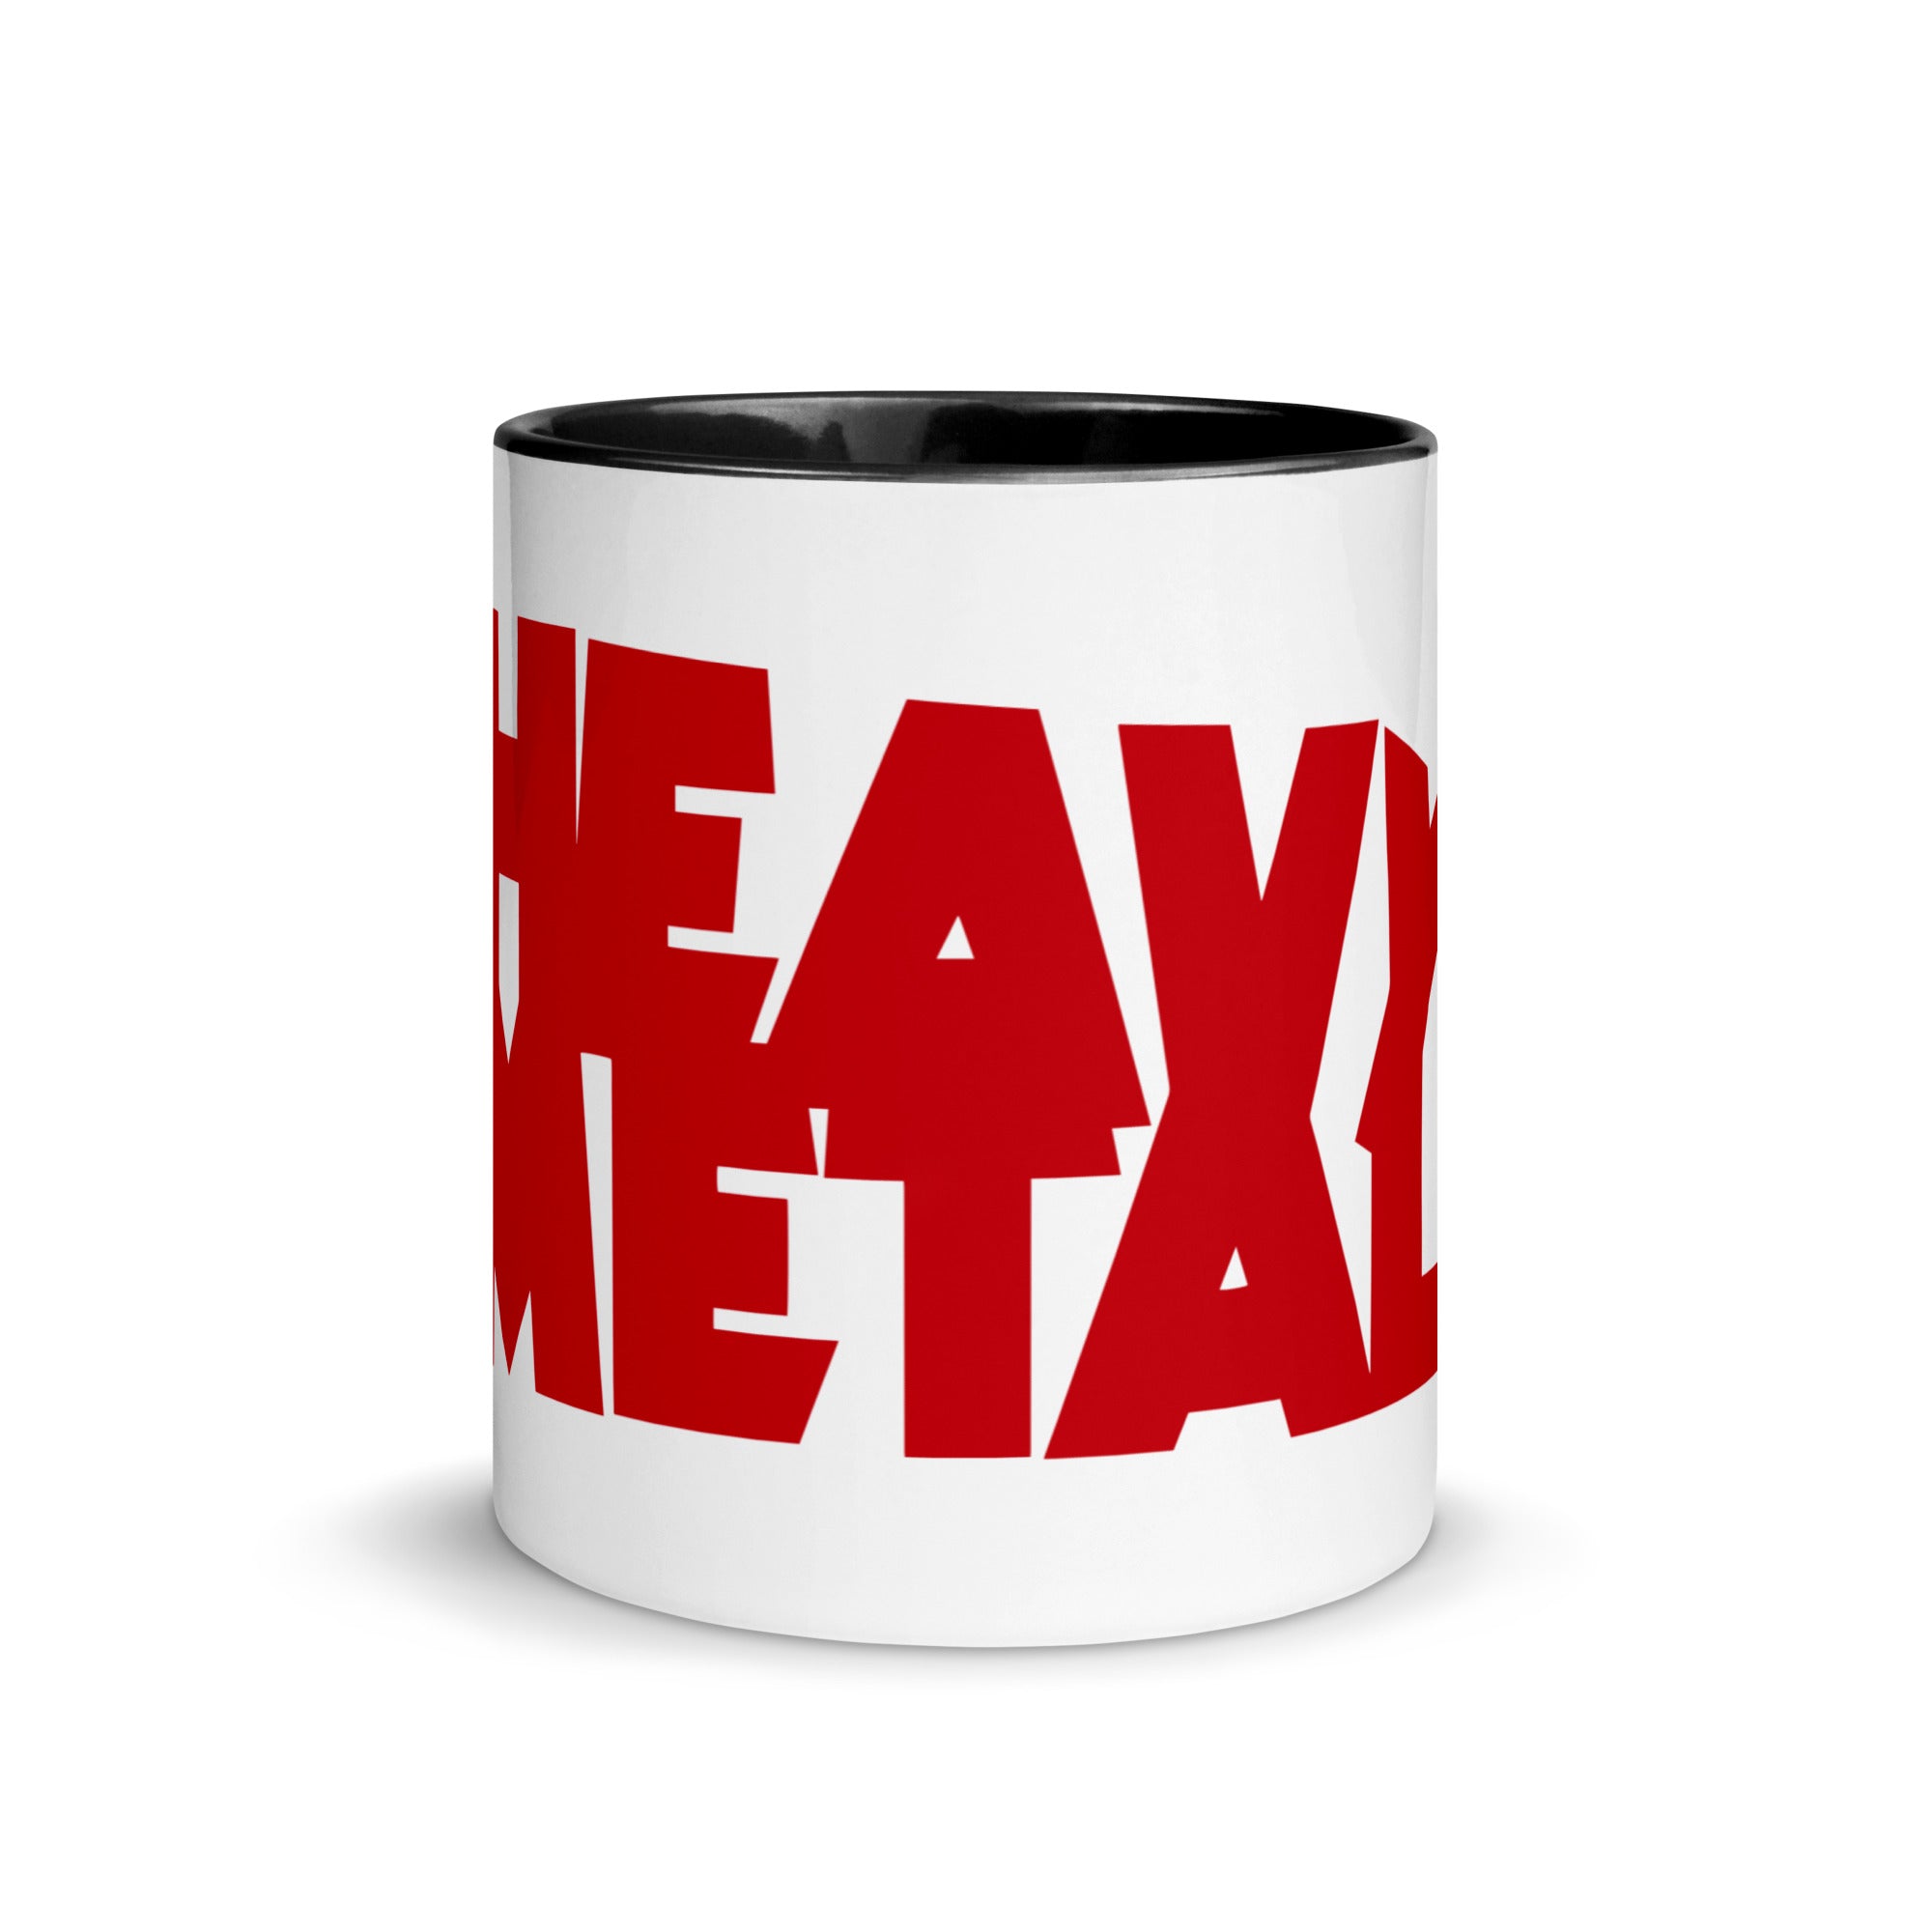 https://shop.heavymetal.com/cdn/shop/products/white-ceramic-mug-with-color-inside-black-11oz-front-62e055e8c2466_1024x1024@2x.jpg?v=1658869239